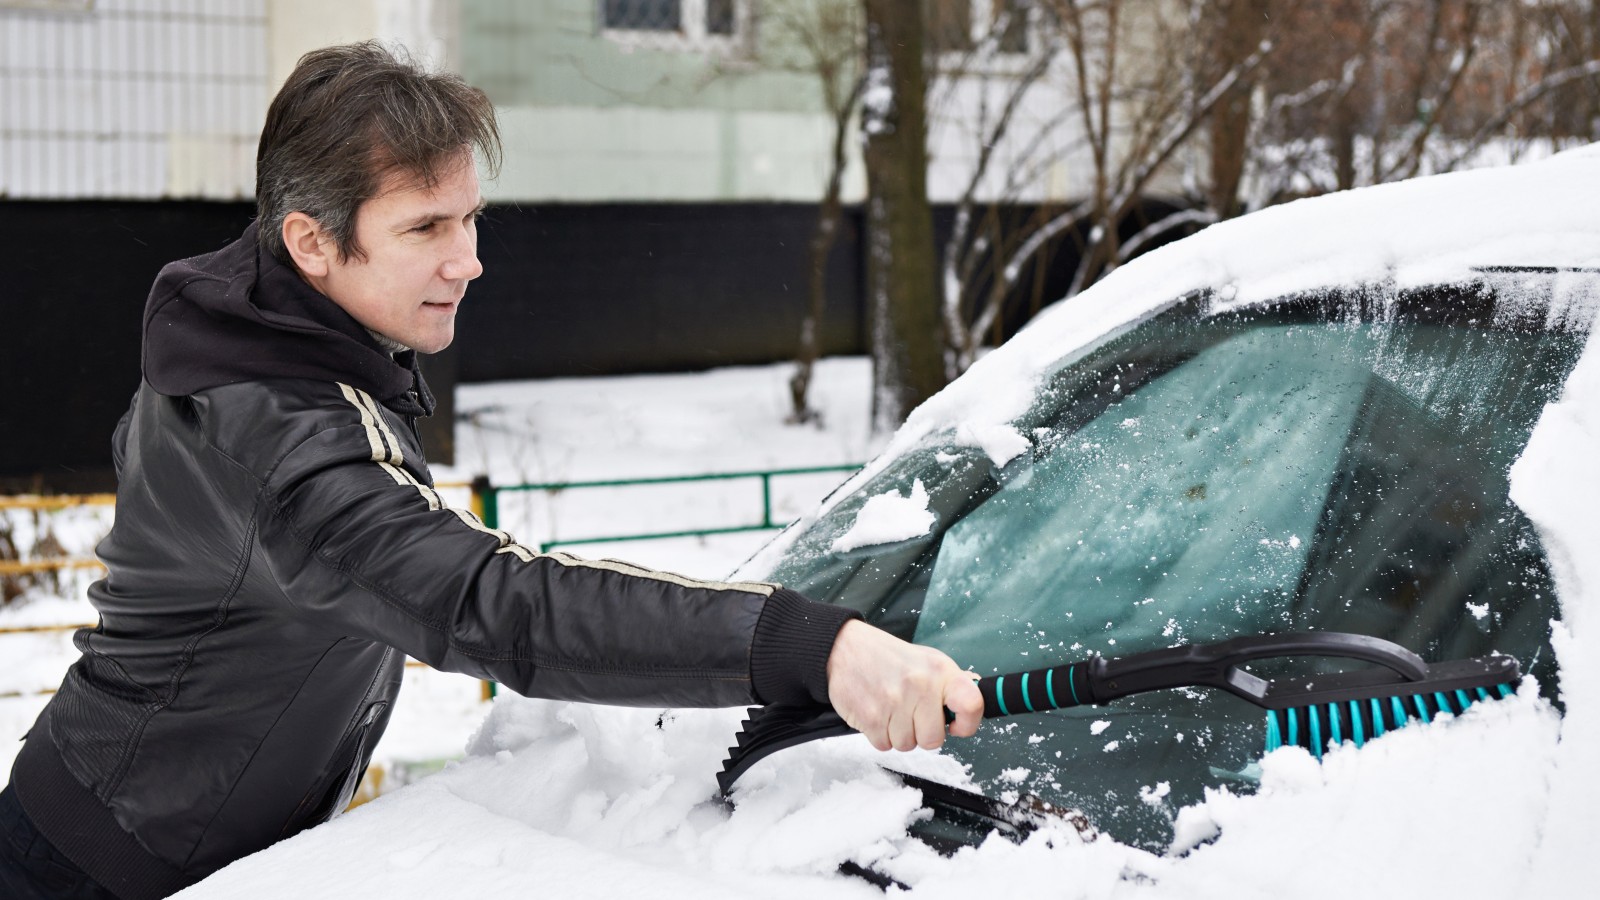 Freie Sicht im Herbst und Winter: Tipps für Autofahrer bei Schnee